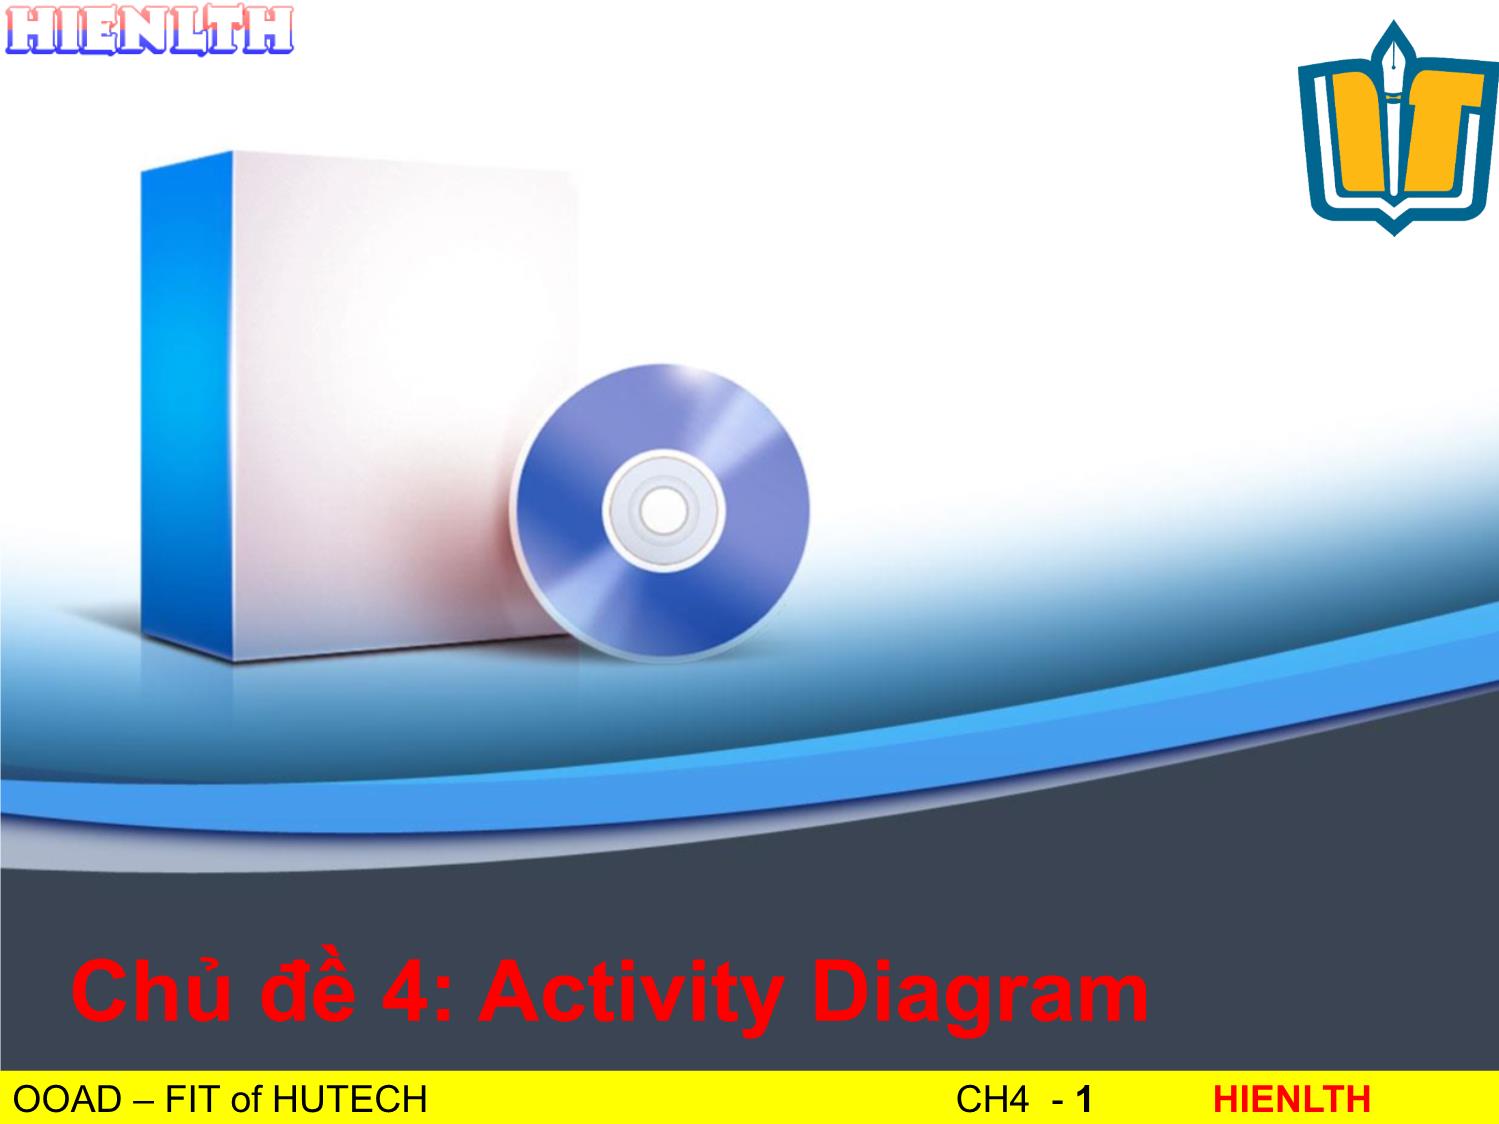 Bài giảng Phân tích thiết kế hướng đối tượng - Bài 4: Activity Diagram - Lương Trần Hy Hiến trang 1